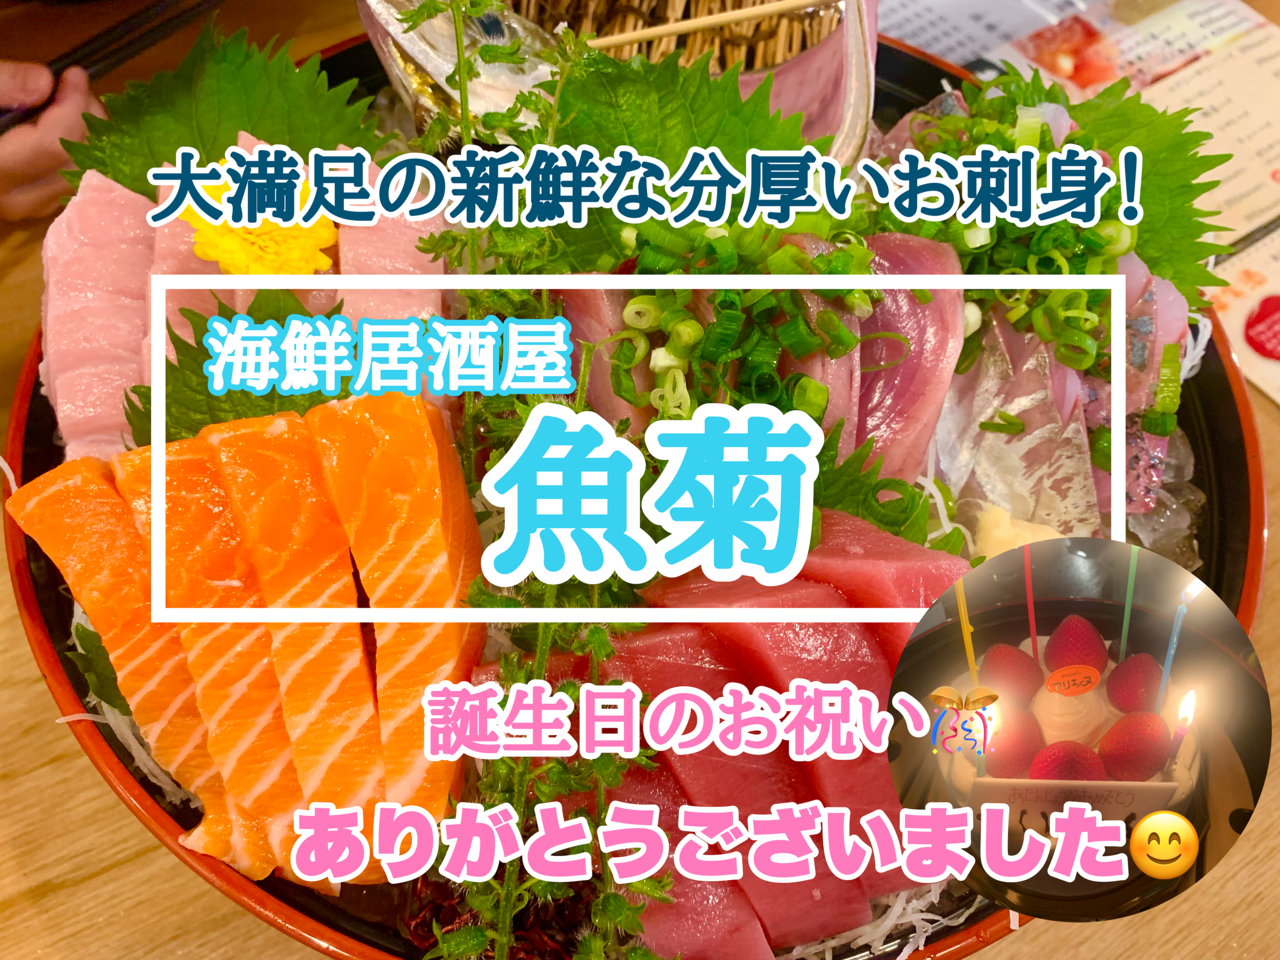 【誕生日のお祝いに】三郷市早稲田1丁目の「魚菊」さんへ行ってきました！